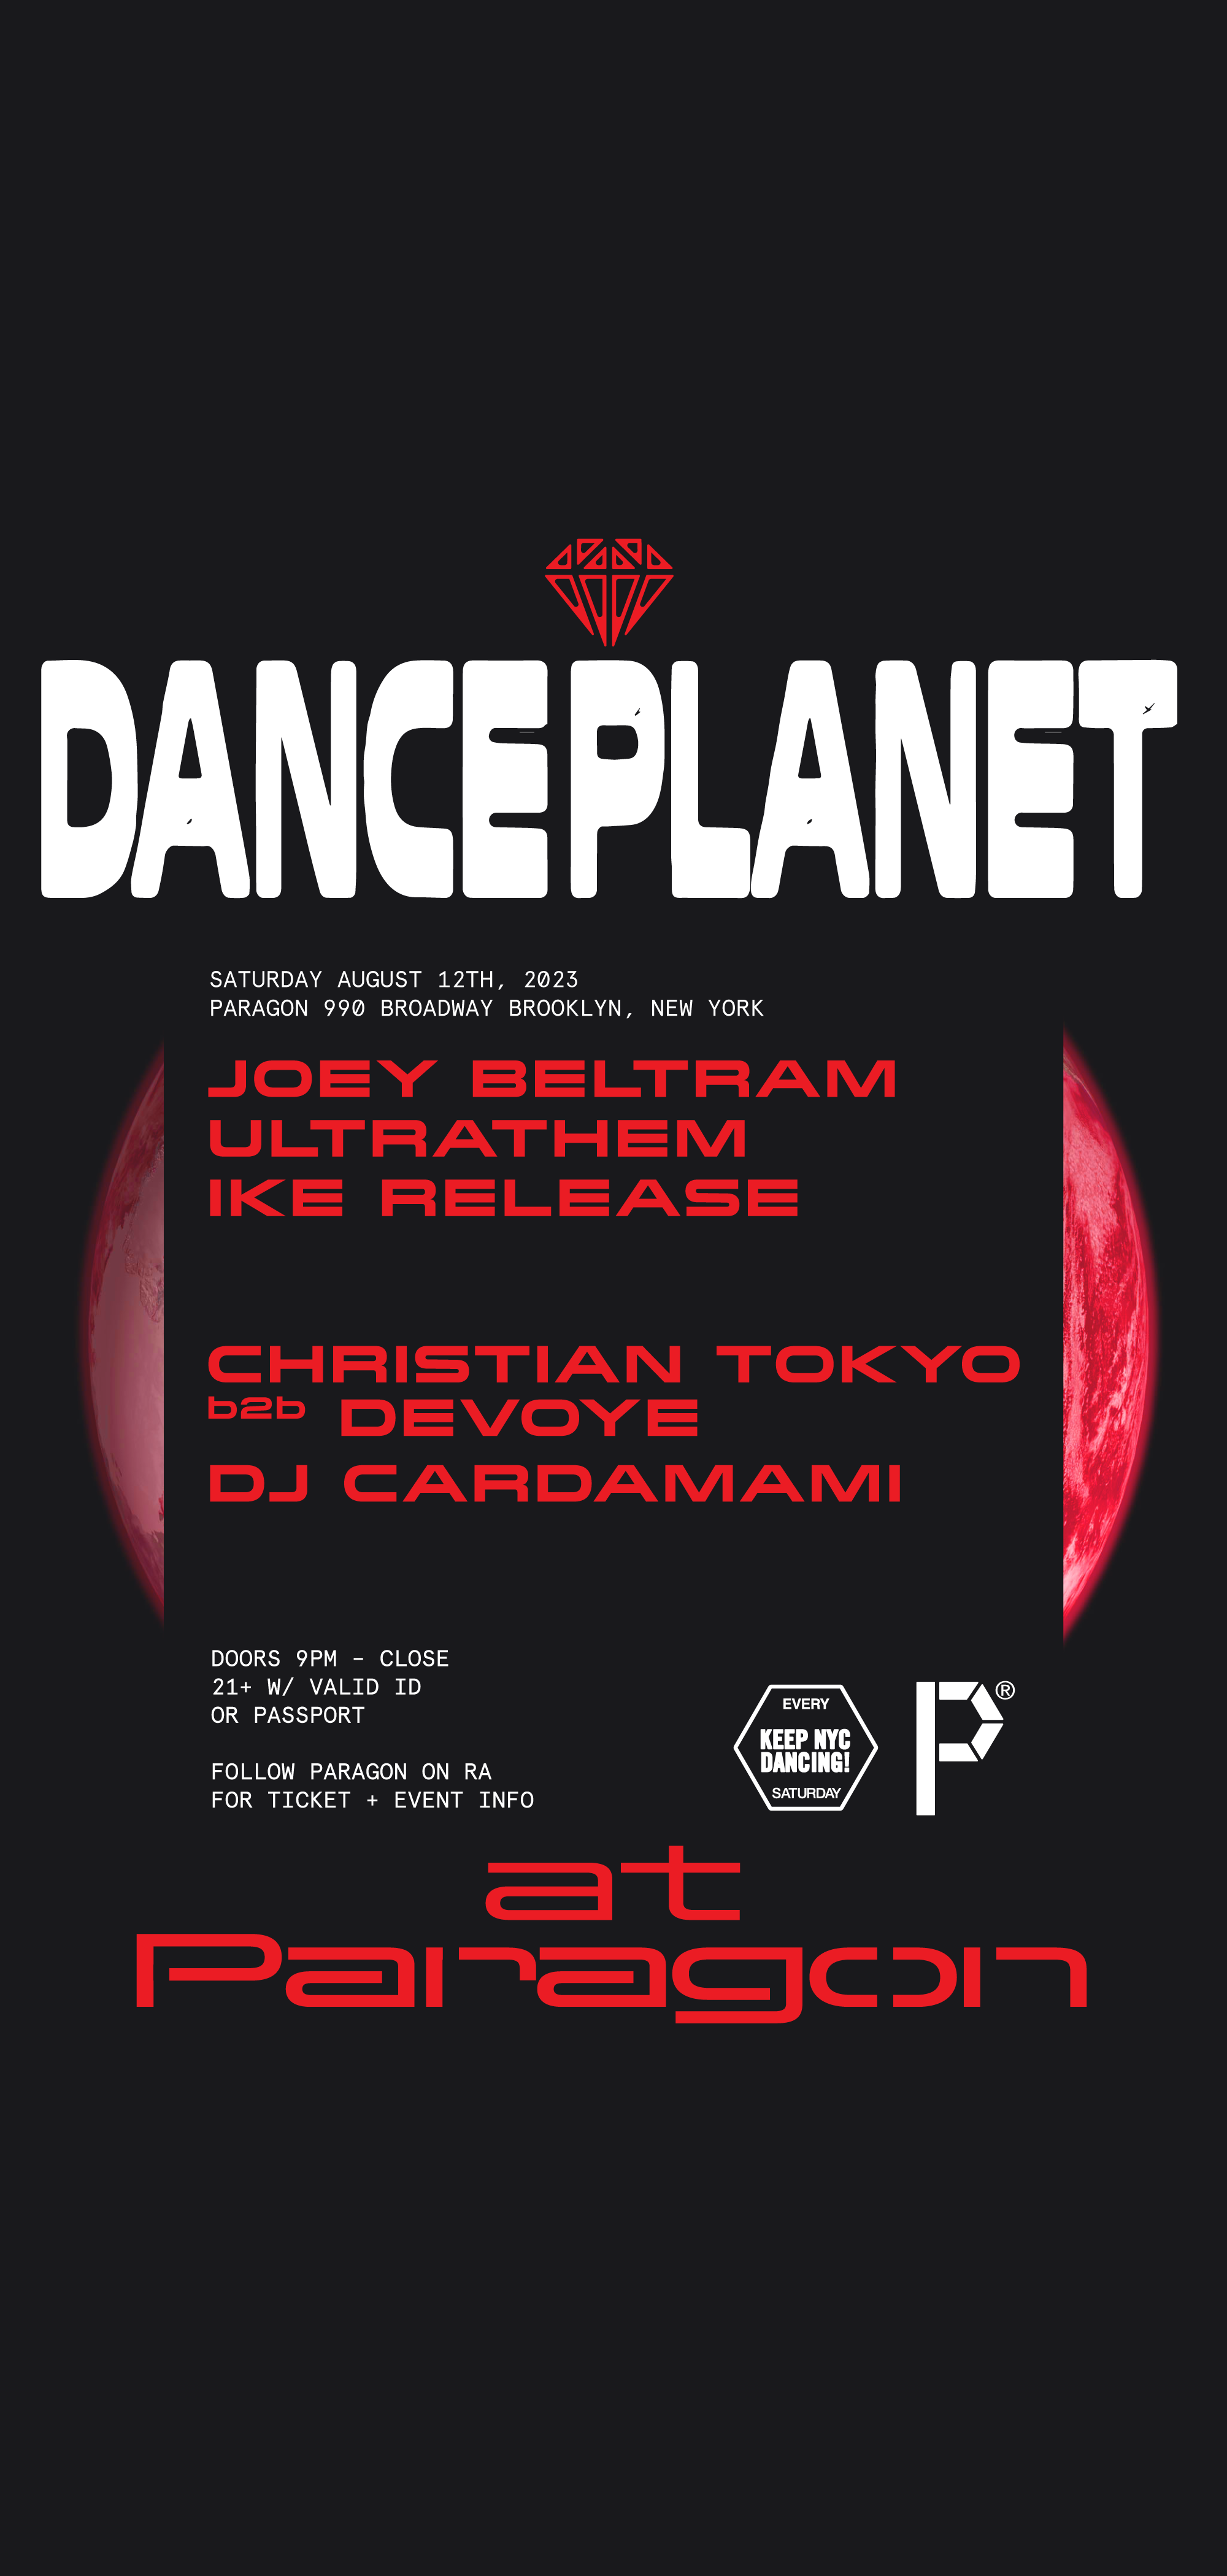 DANCE PLANET: Joey Beltram, Ultrathem, Ike Release + Christian Tokyo b2b Devoye - フライヤー表